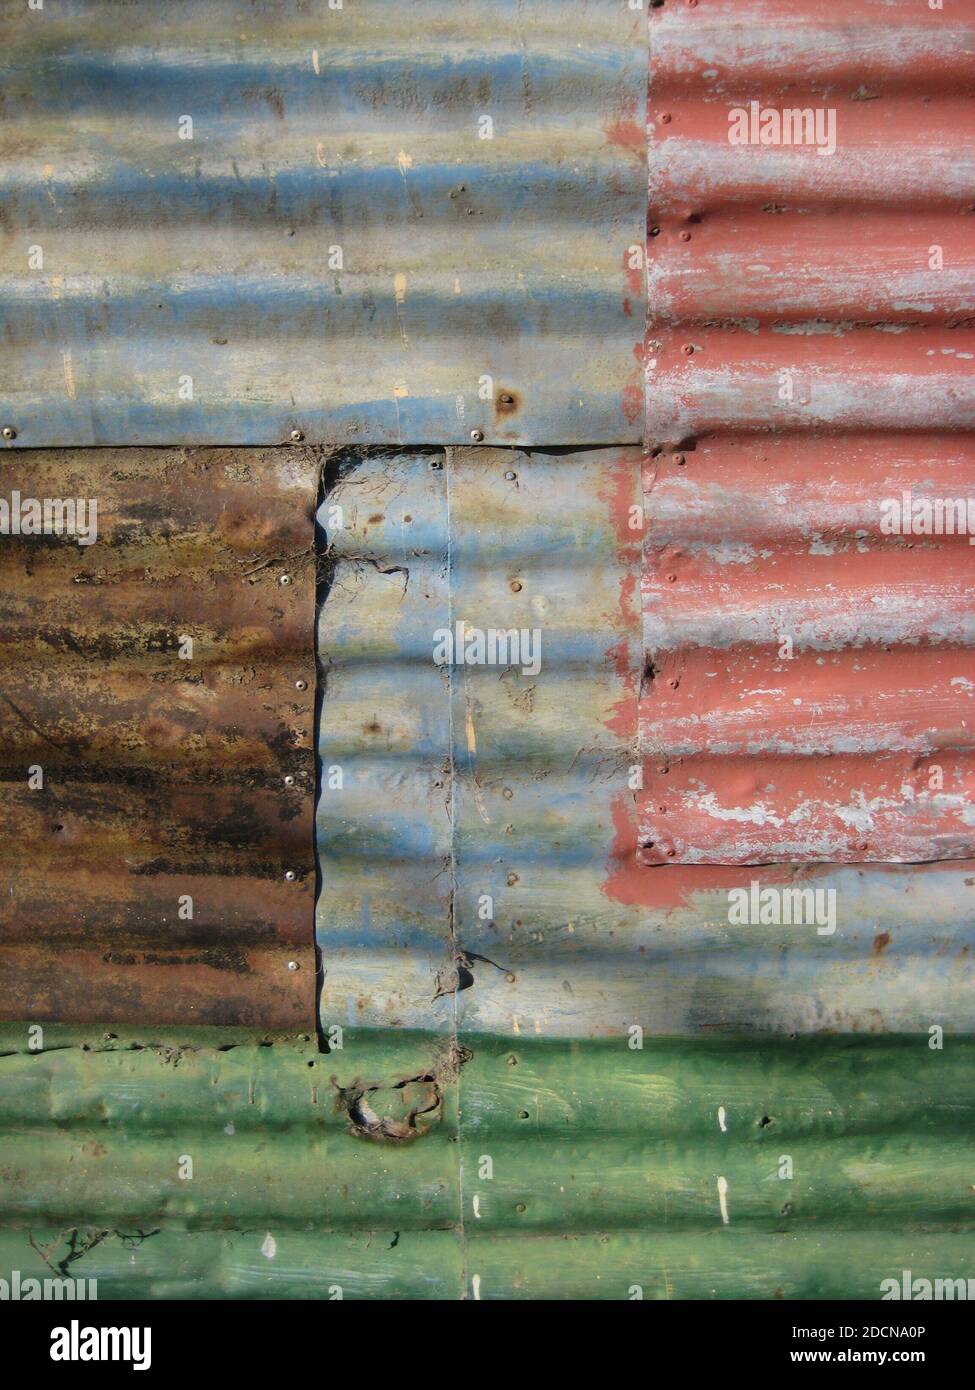 mur fait de feuilles de métal ondulé avec différentes couleurs décolorées et rouille, fond texturé Banque D'Images